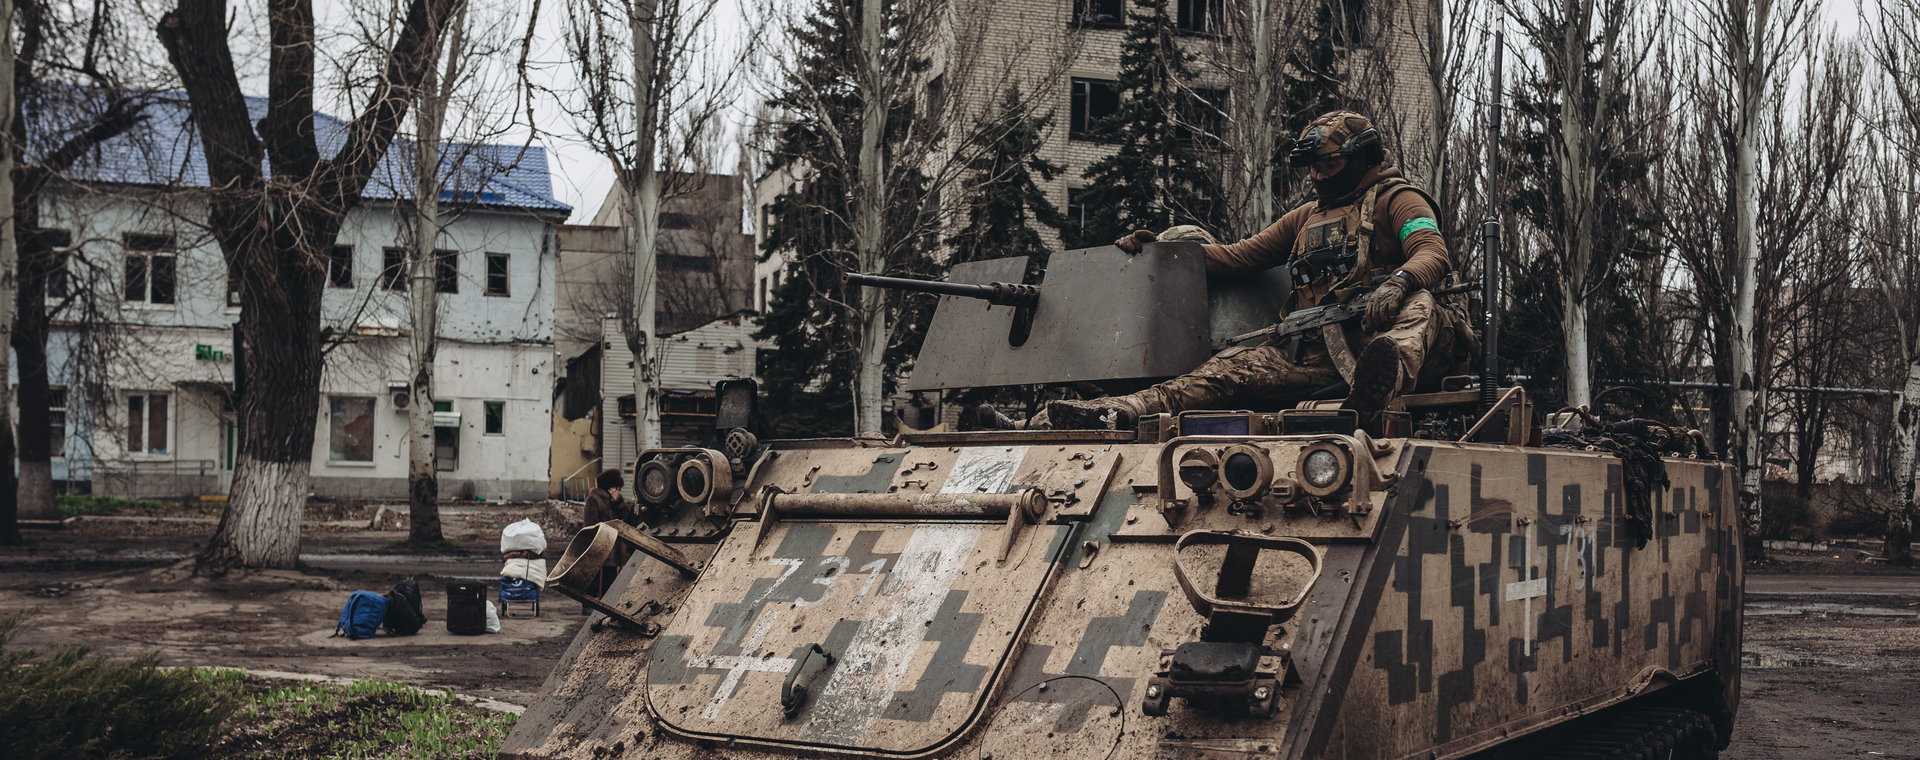 Ukraińscy żołnierze na opancerzonym pojeździe wojskowym.